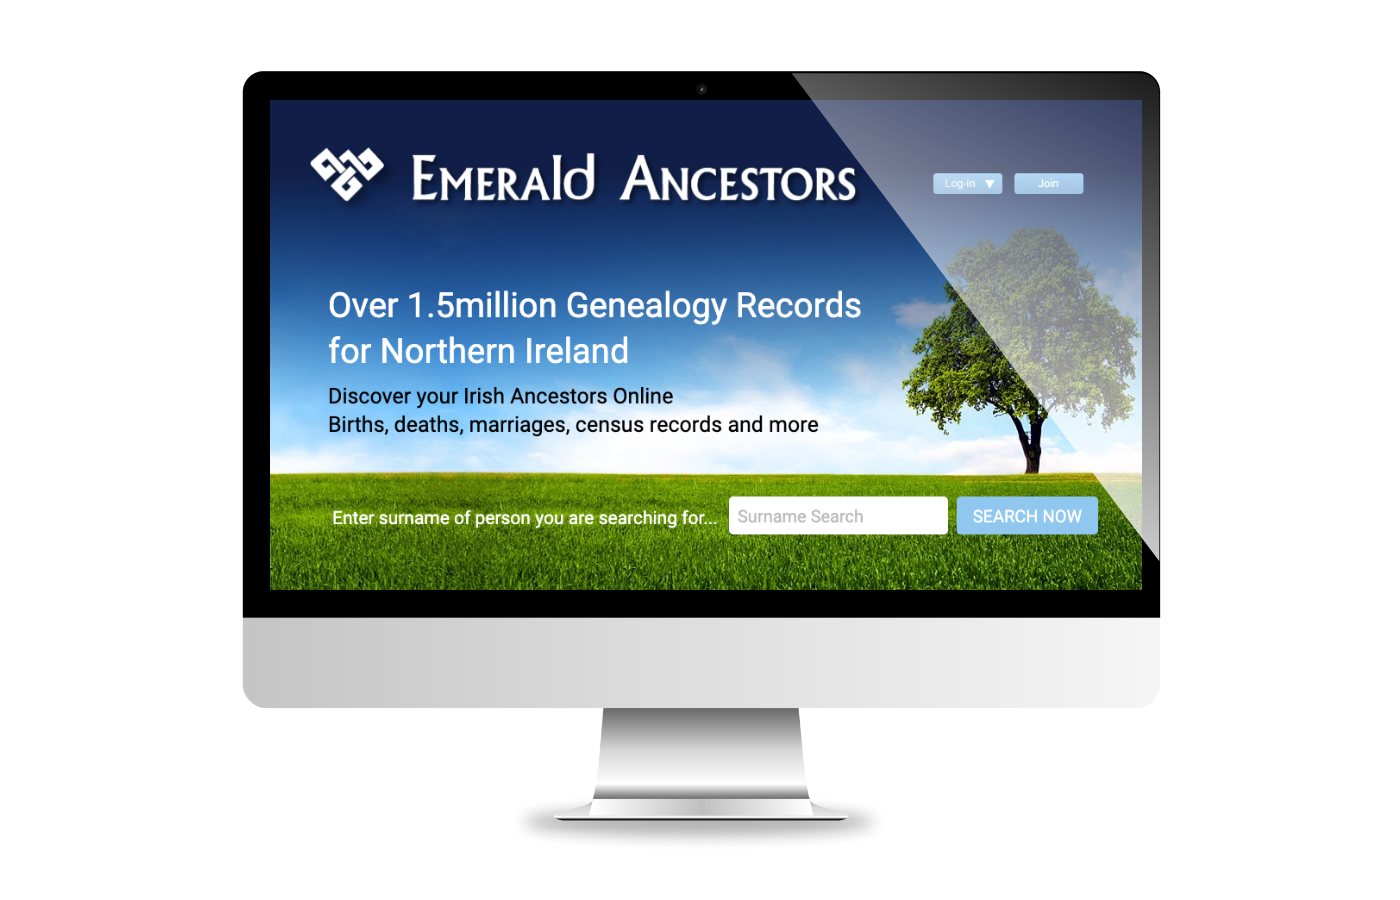 emerald-ancestors12x